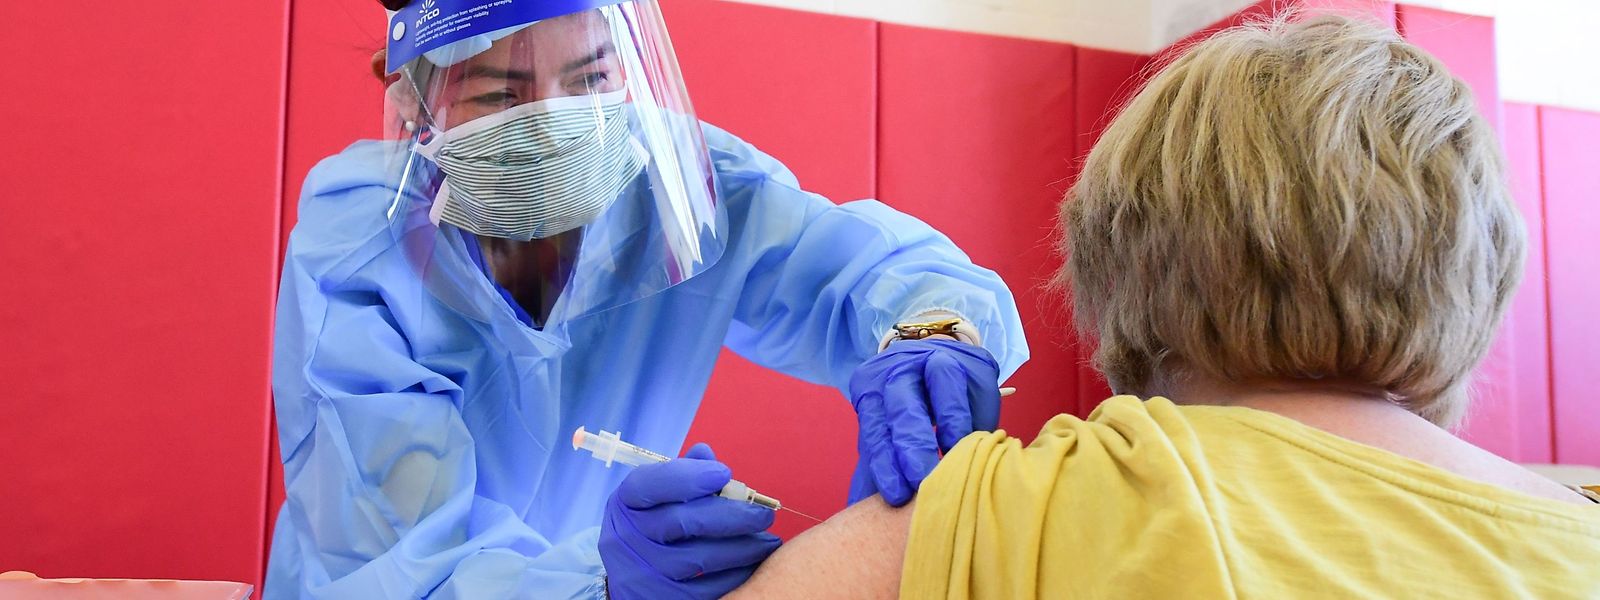 Pour l'heure, le ministère de la Santé a annoncé 3.233 vaccinations anti-covid déjà réalisées dans le pays